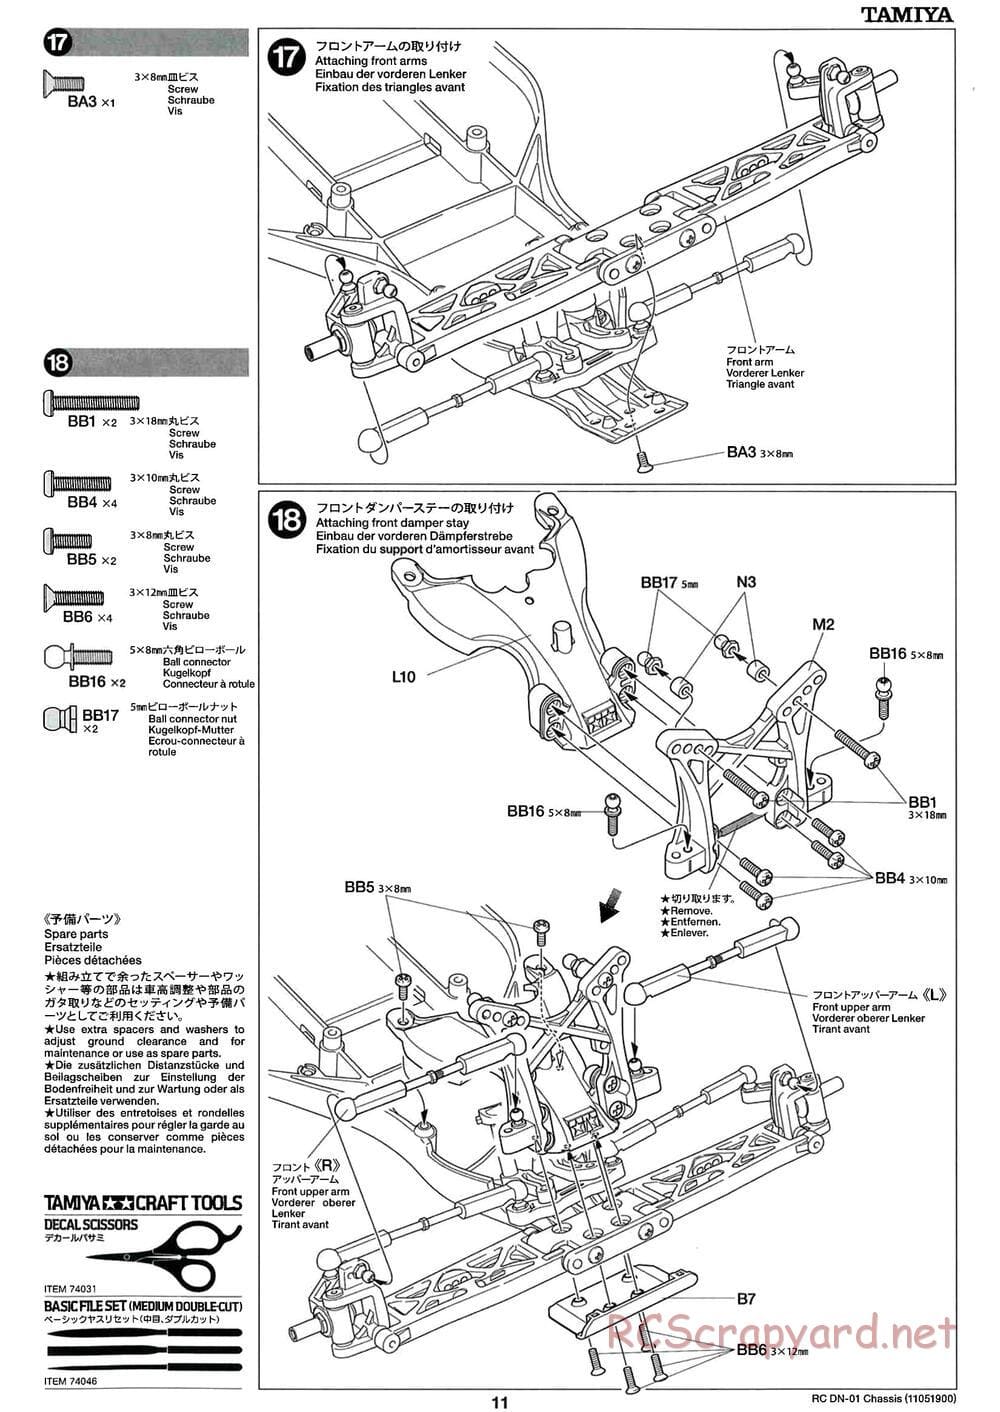 Tamiya - DN-01 Chassis - Manual - Page 11